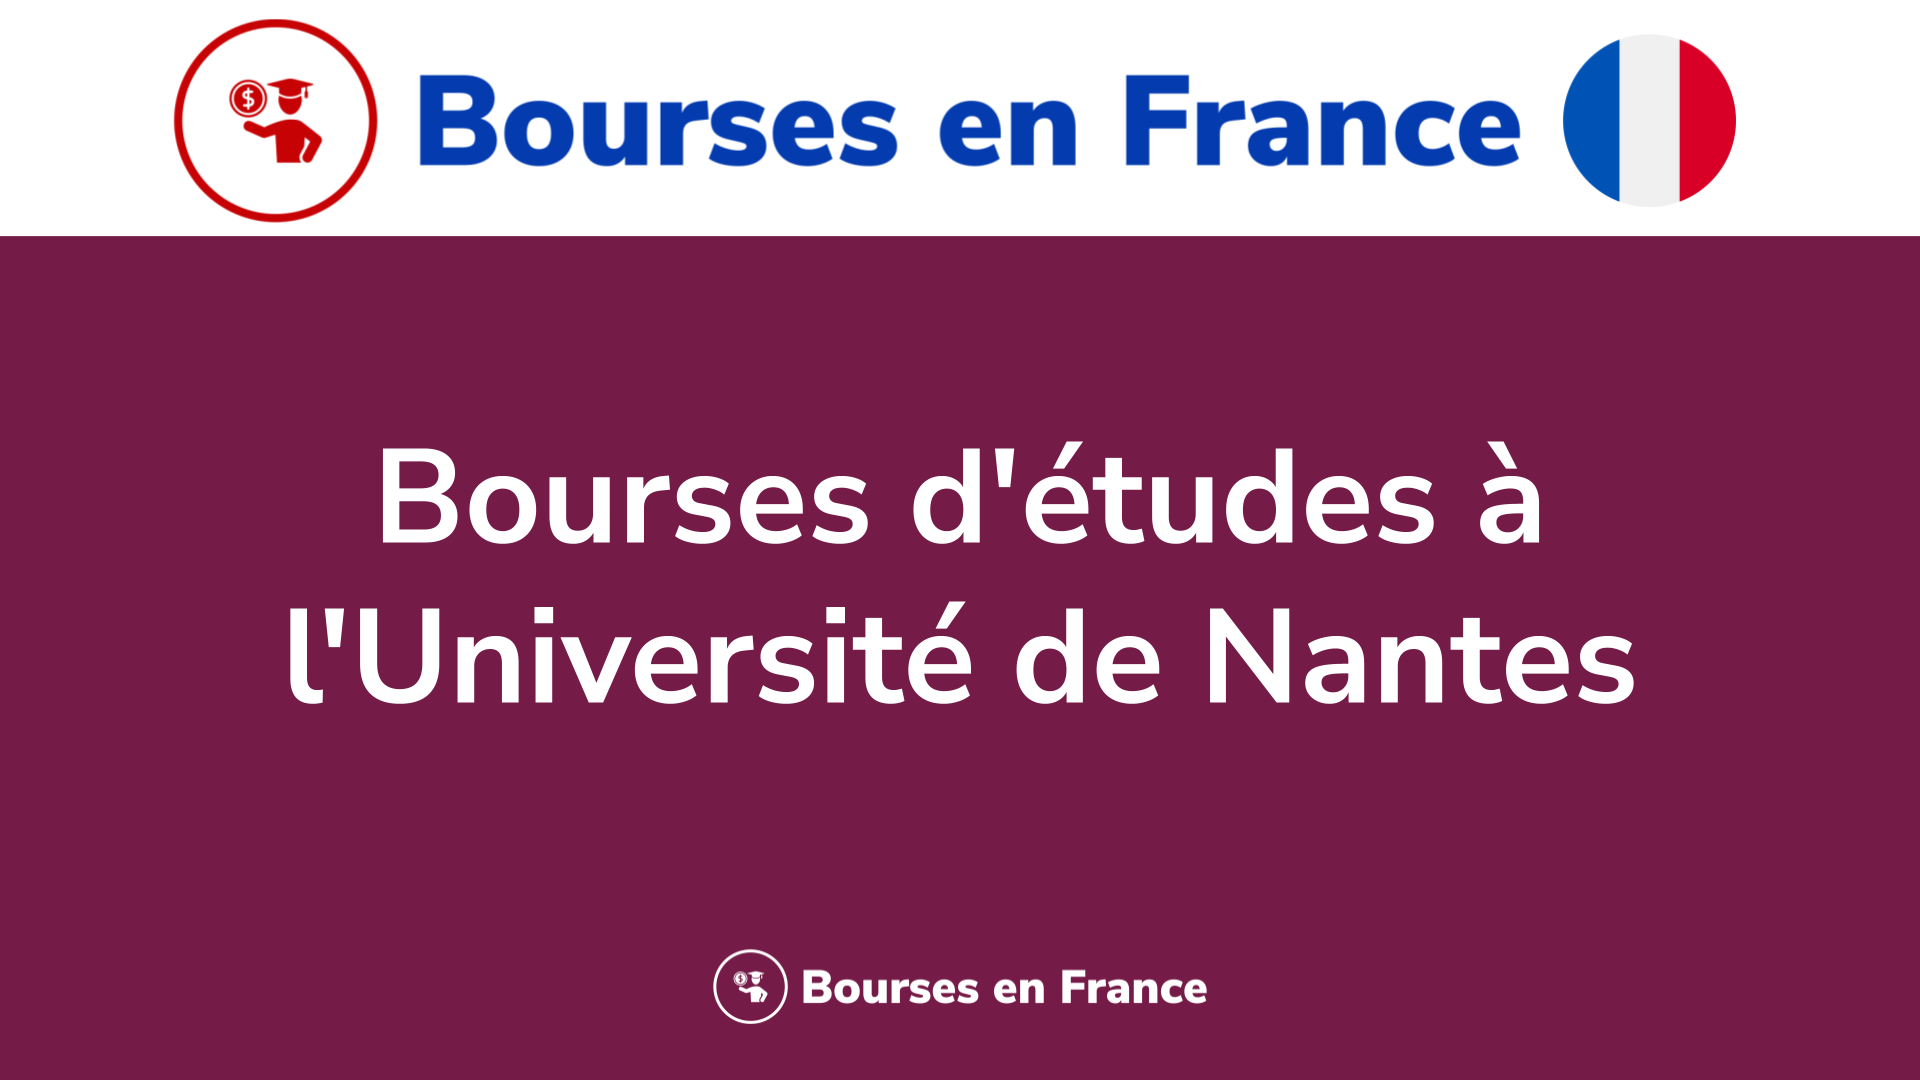 Bourses d'études à l'Université de Nantes